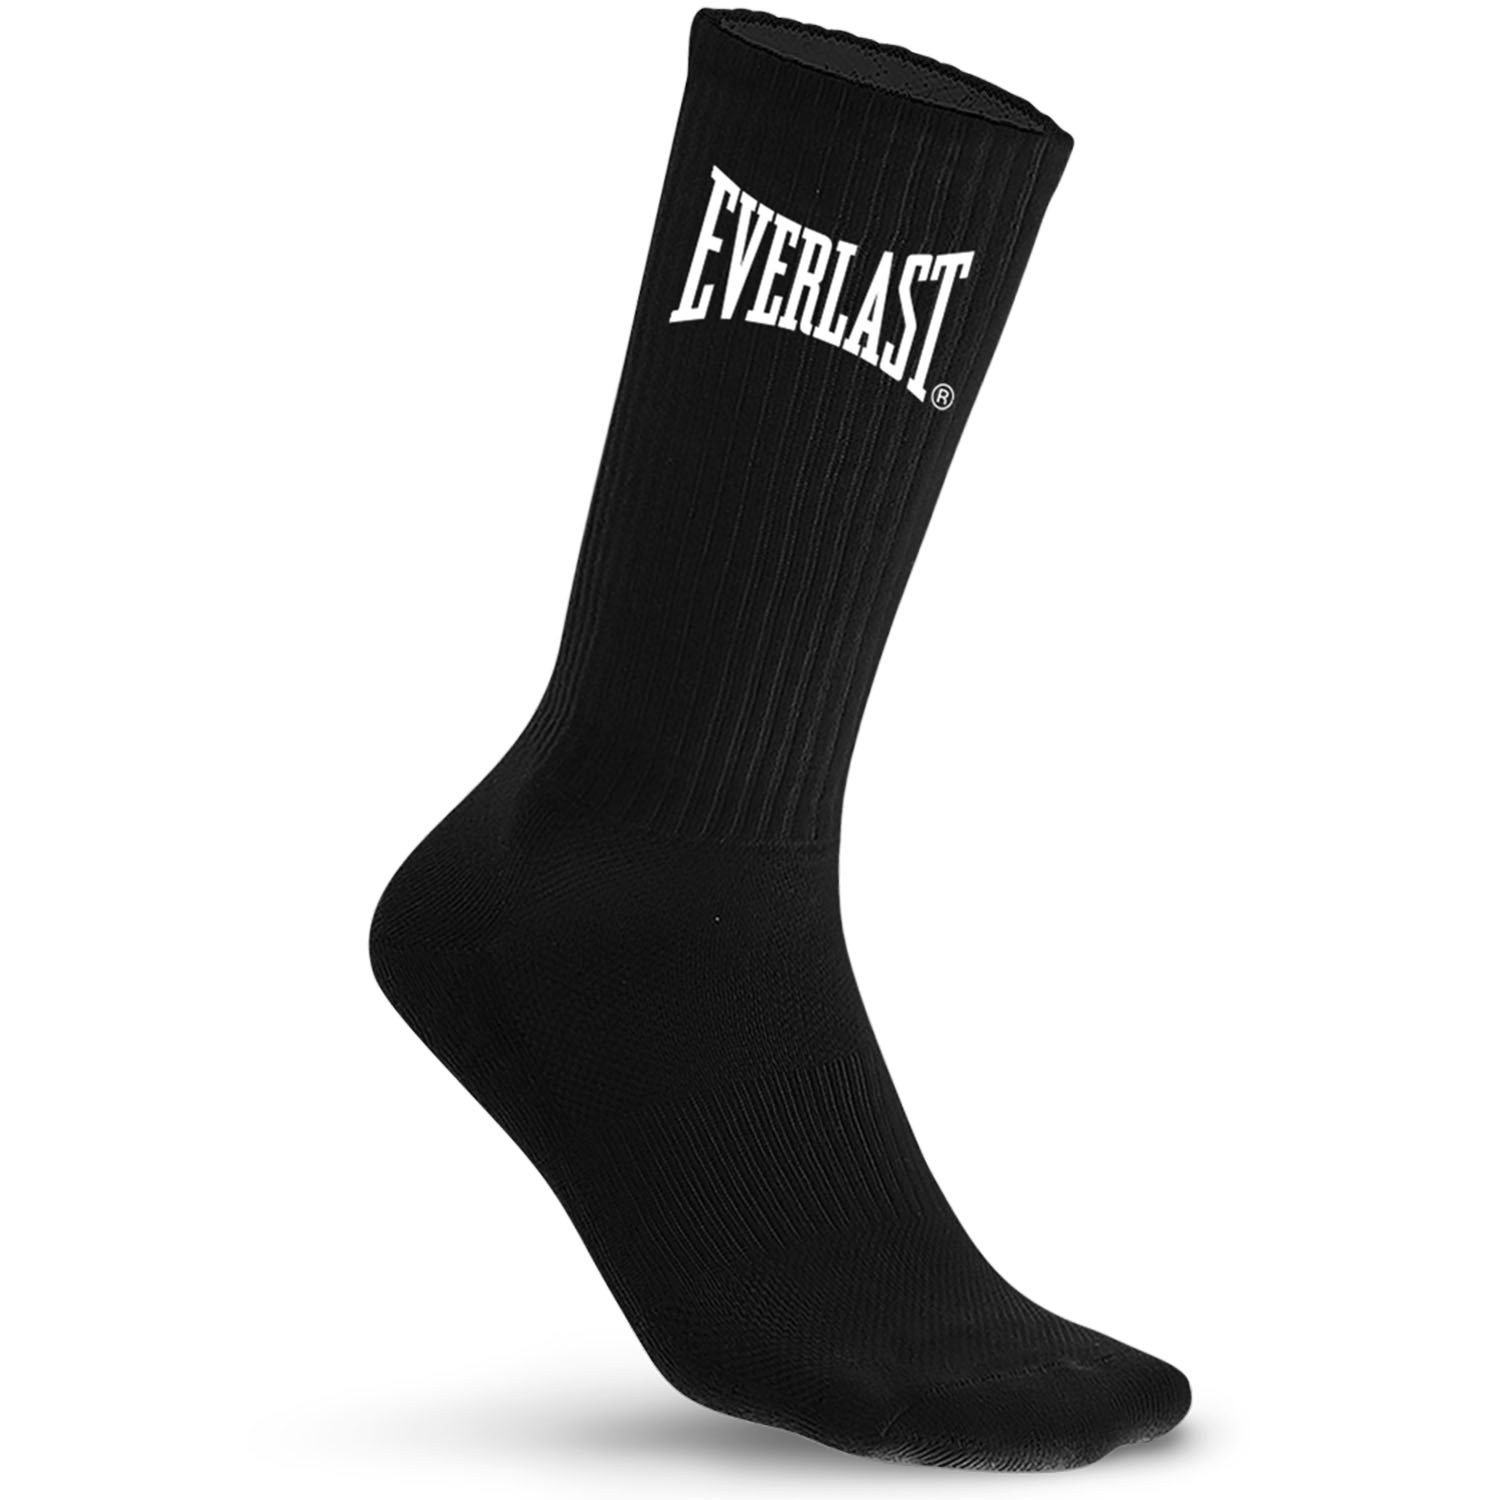 Everlast Socks, 10er Pack, black, 39-42